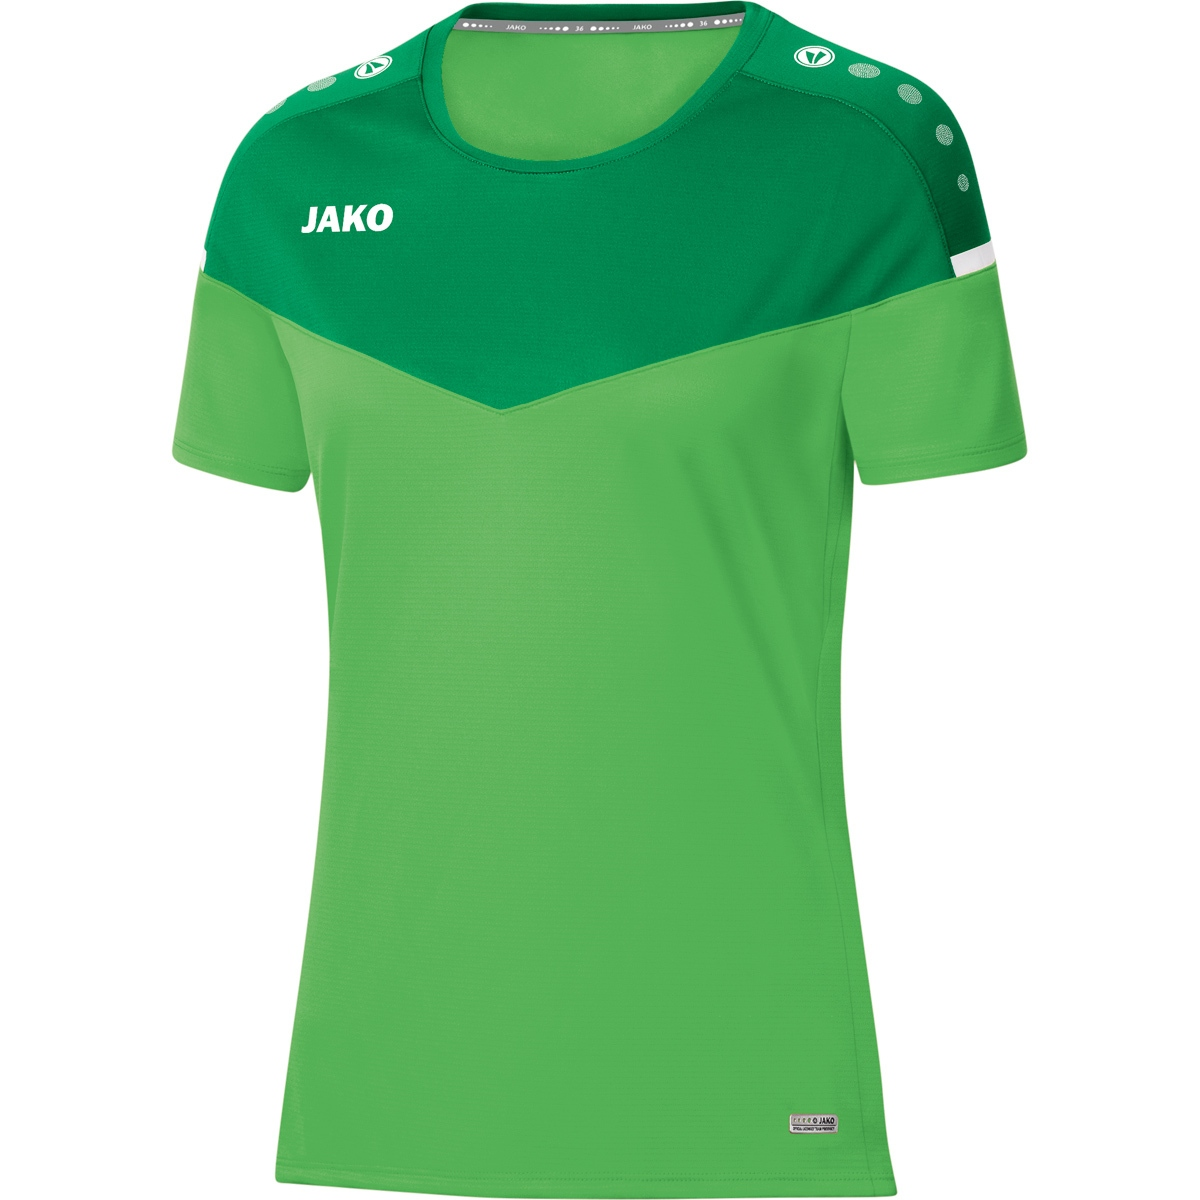 36, soft JAKO 2.0 Champ 6120 green/sportgrün, T-Shirt Gr. Damen,